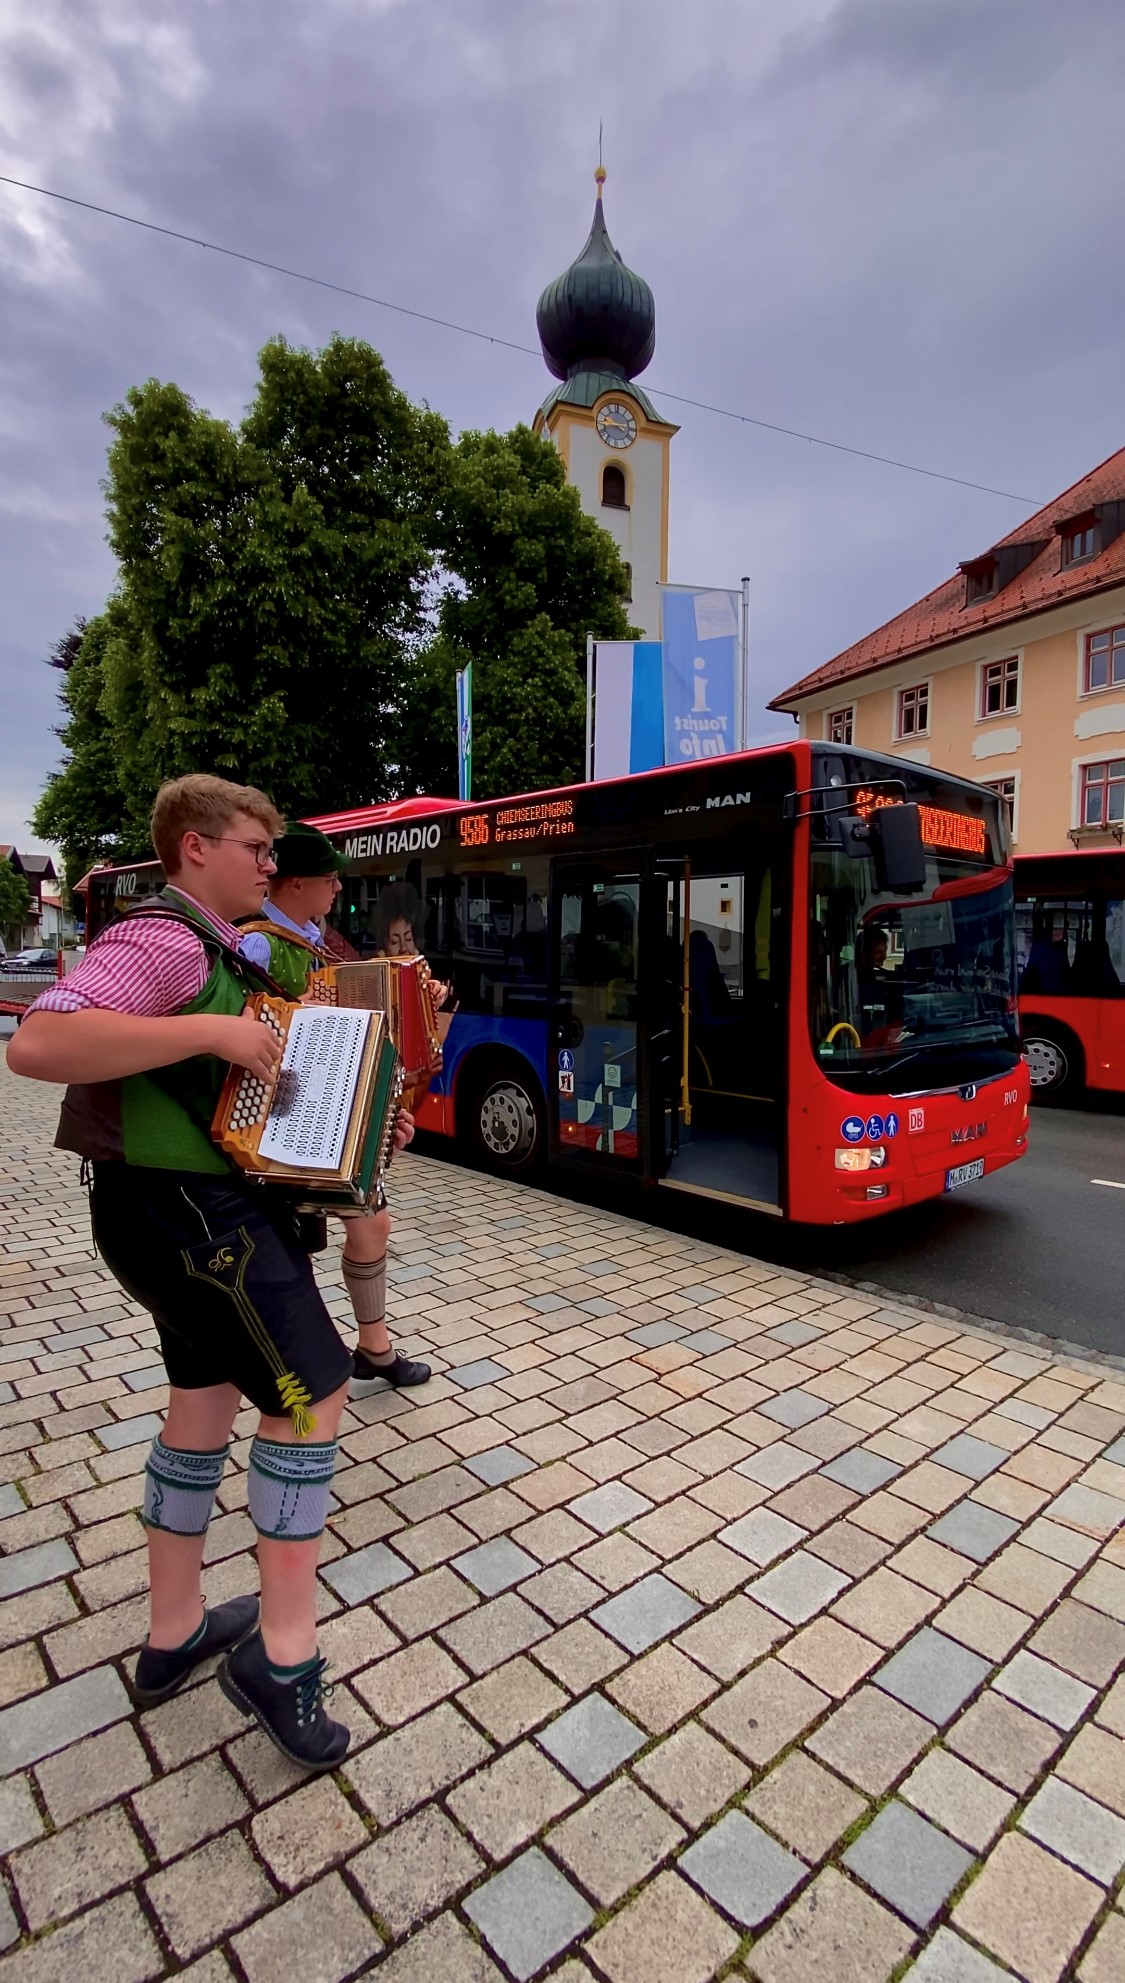 chiemsee-bus-musi_mit_ziachduo_ramsperger-wallner_daniel_illenseer_tourist-info_grassau.jpg